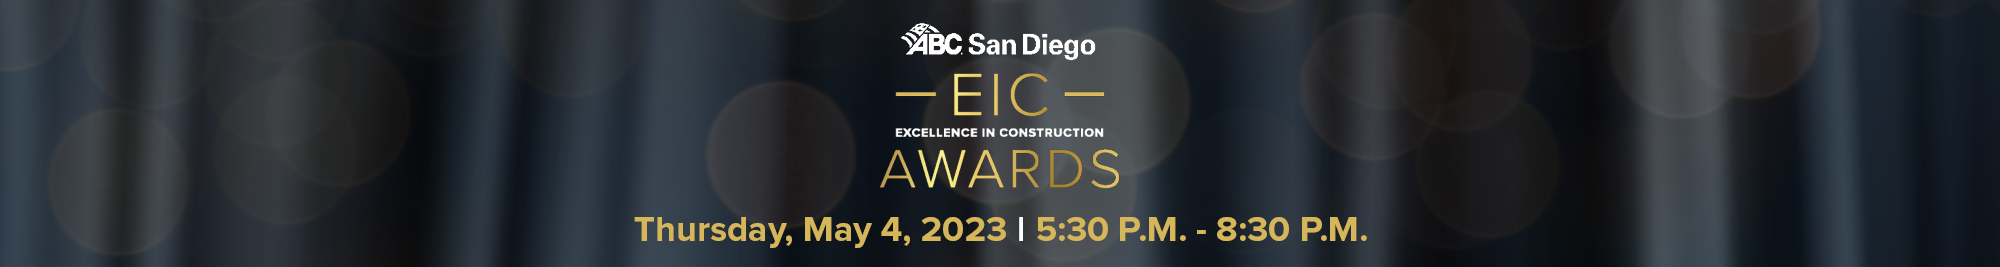 ABC San Diego EIC Awards banner